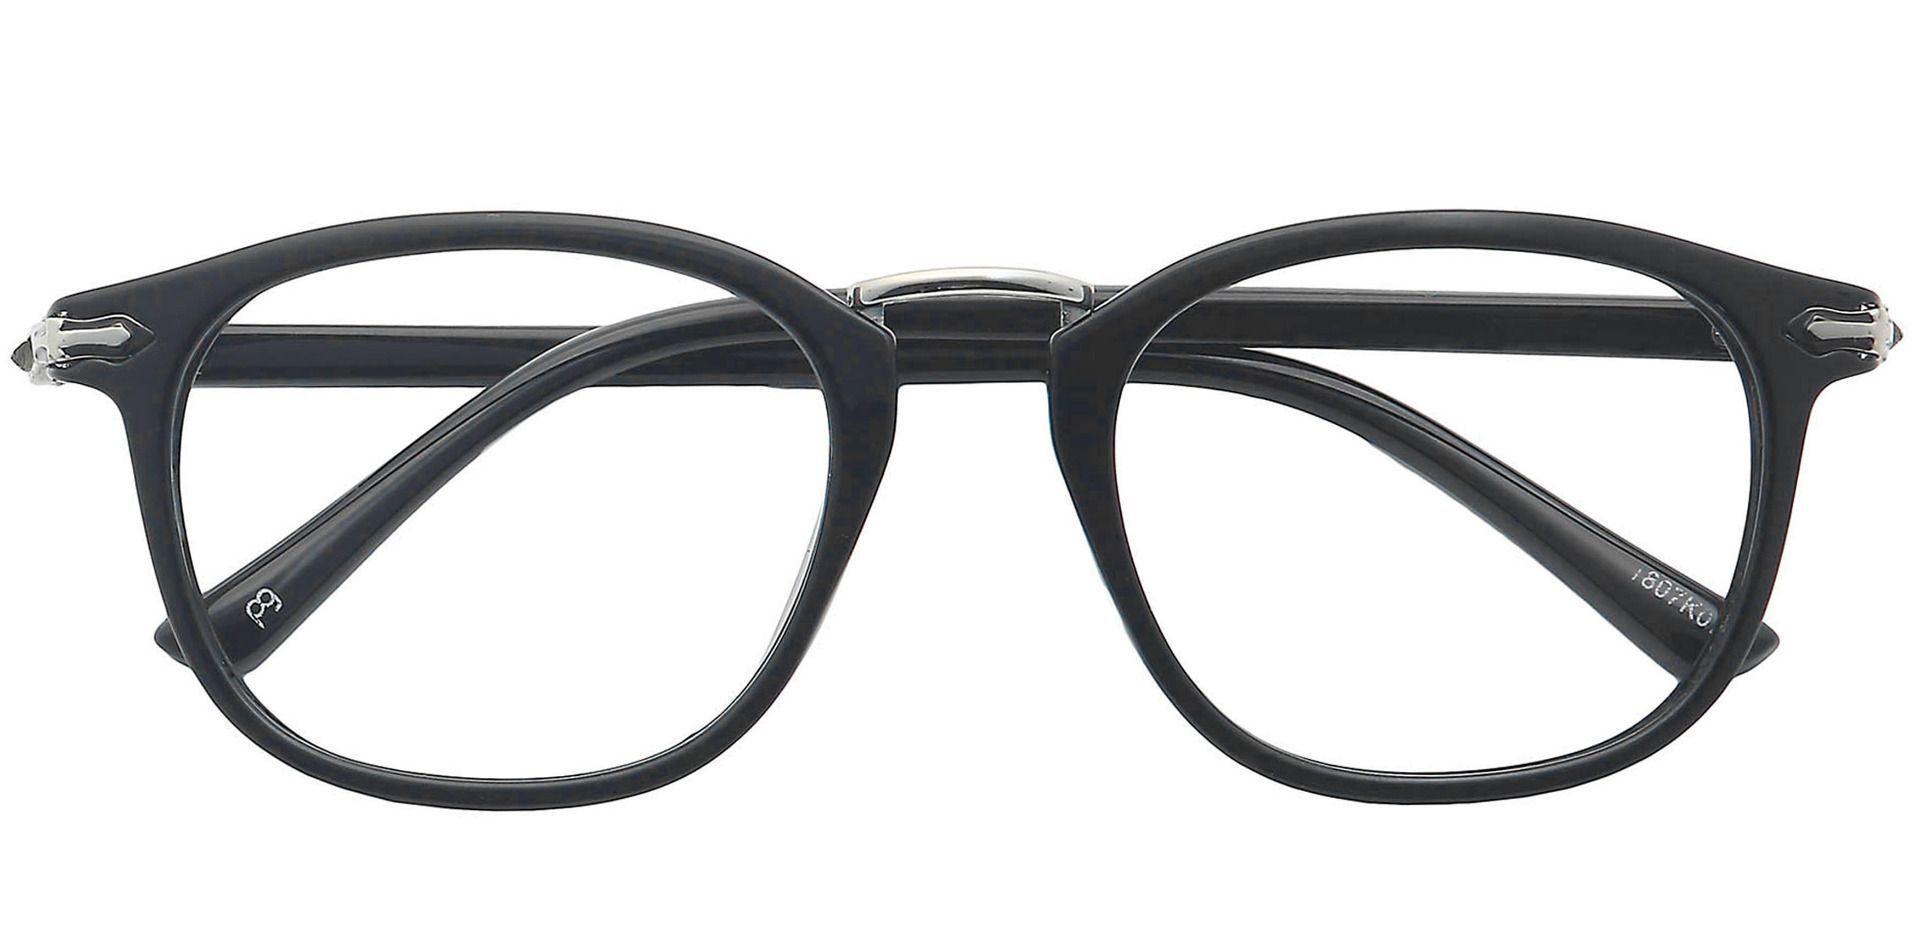 Aurora Square Progressive Glasses - Black